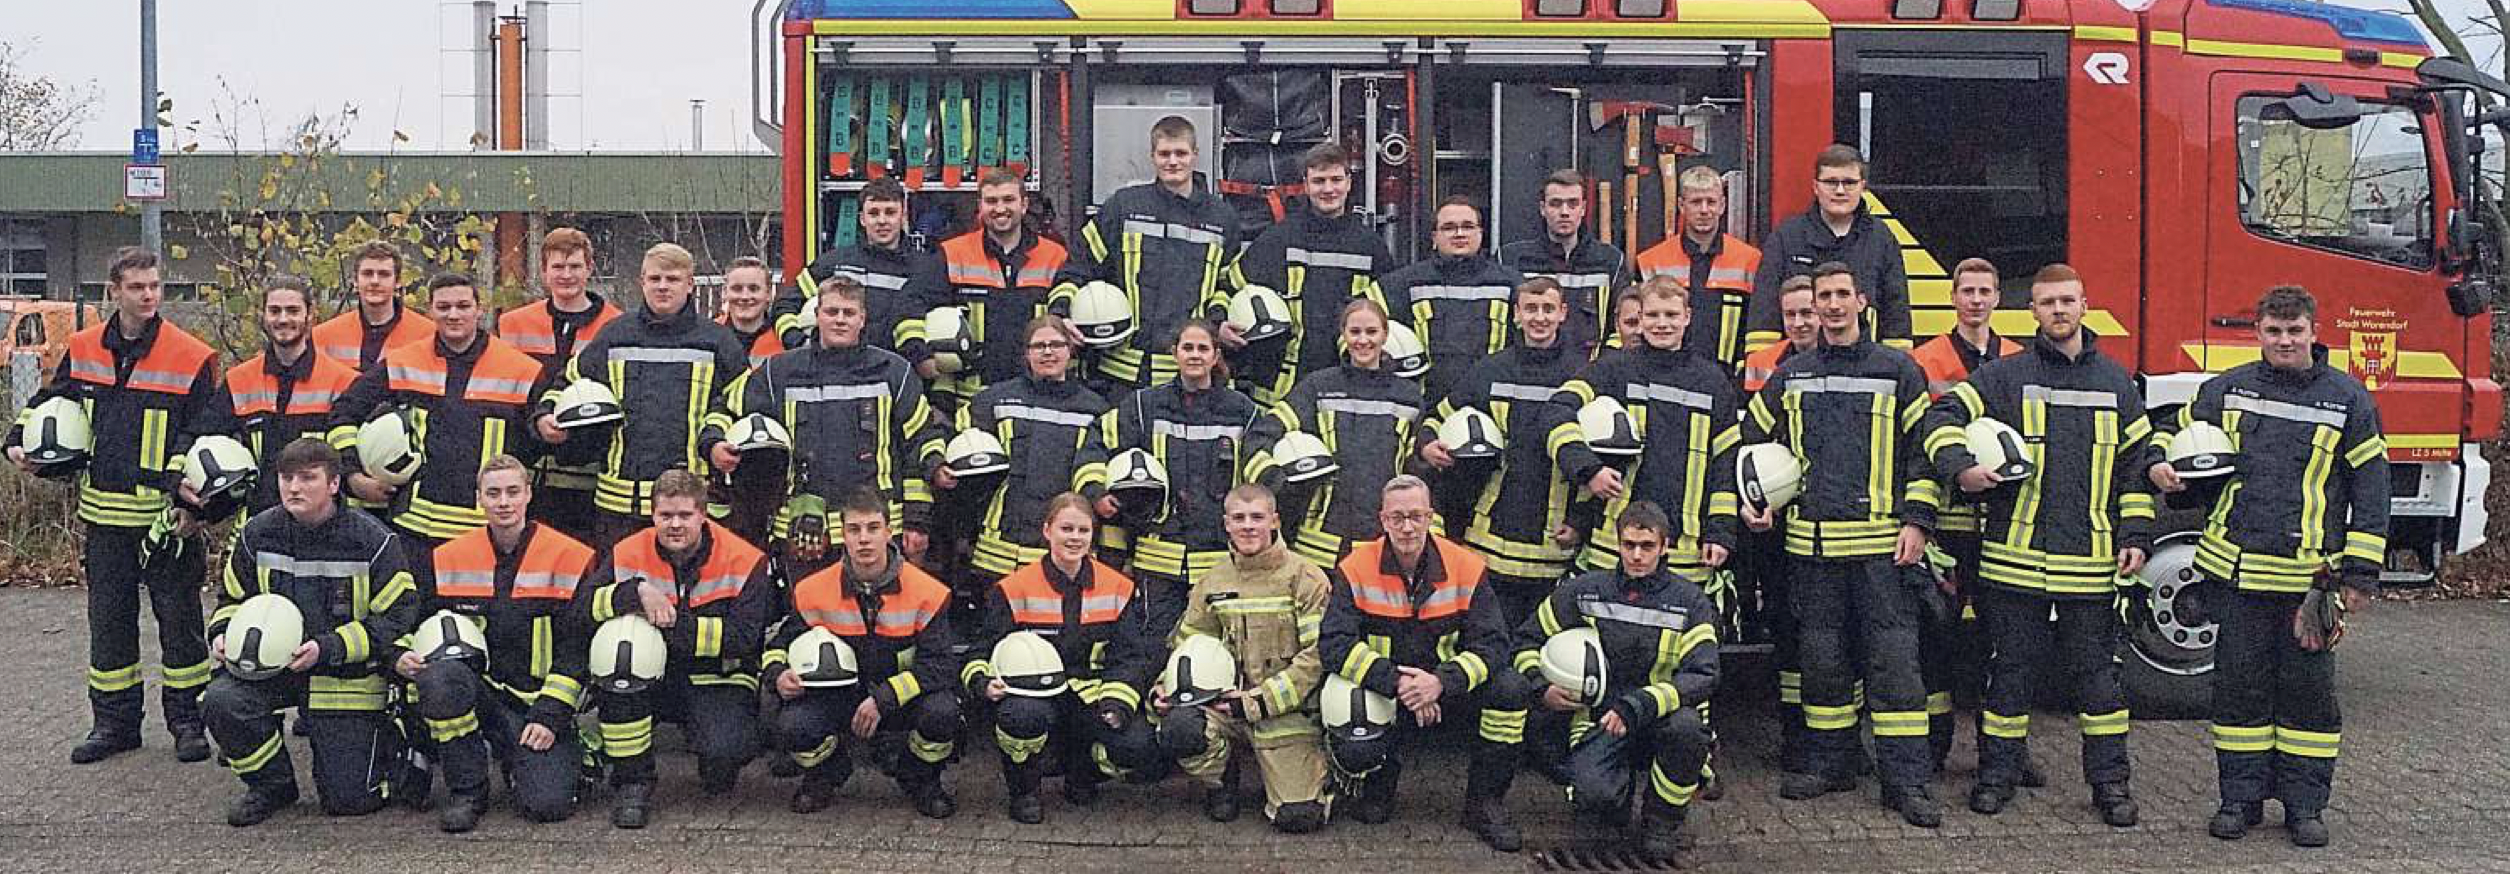 Grundlehrgang erfolgreich beendet - Feuerwehr der Stadt Warendorf